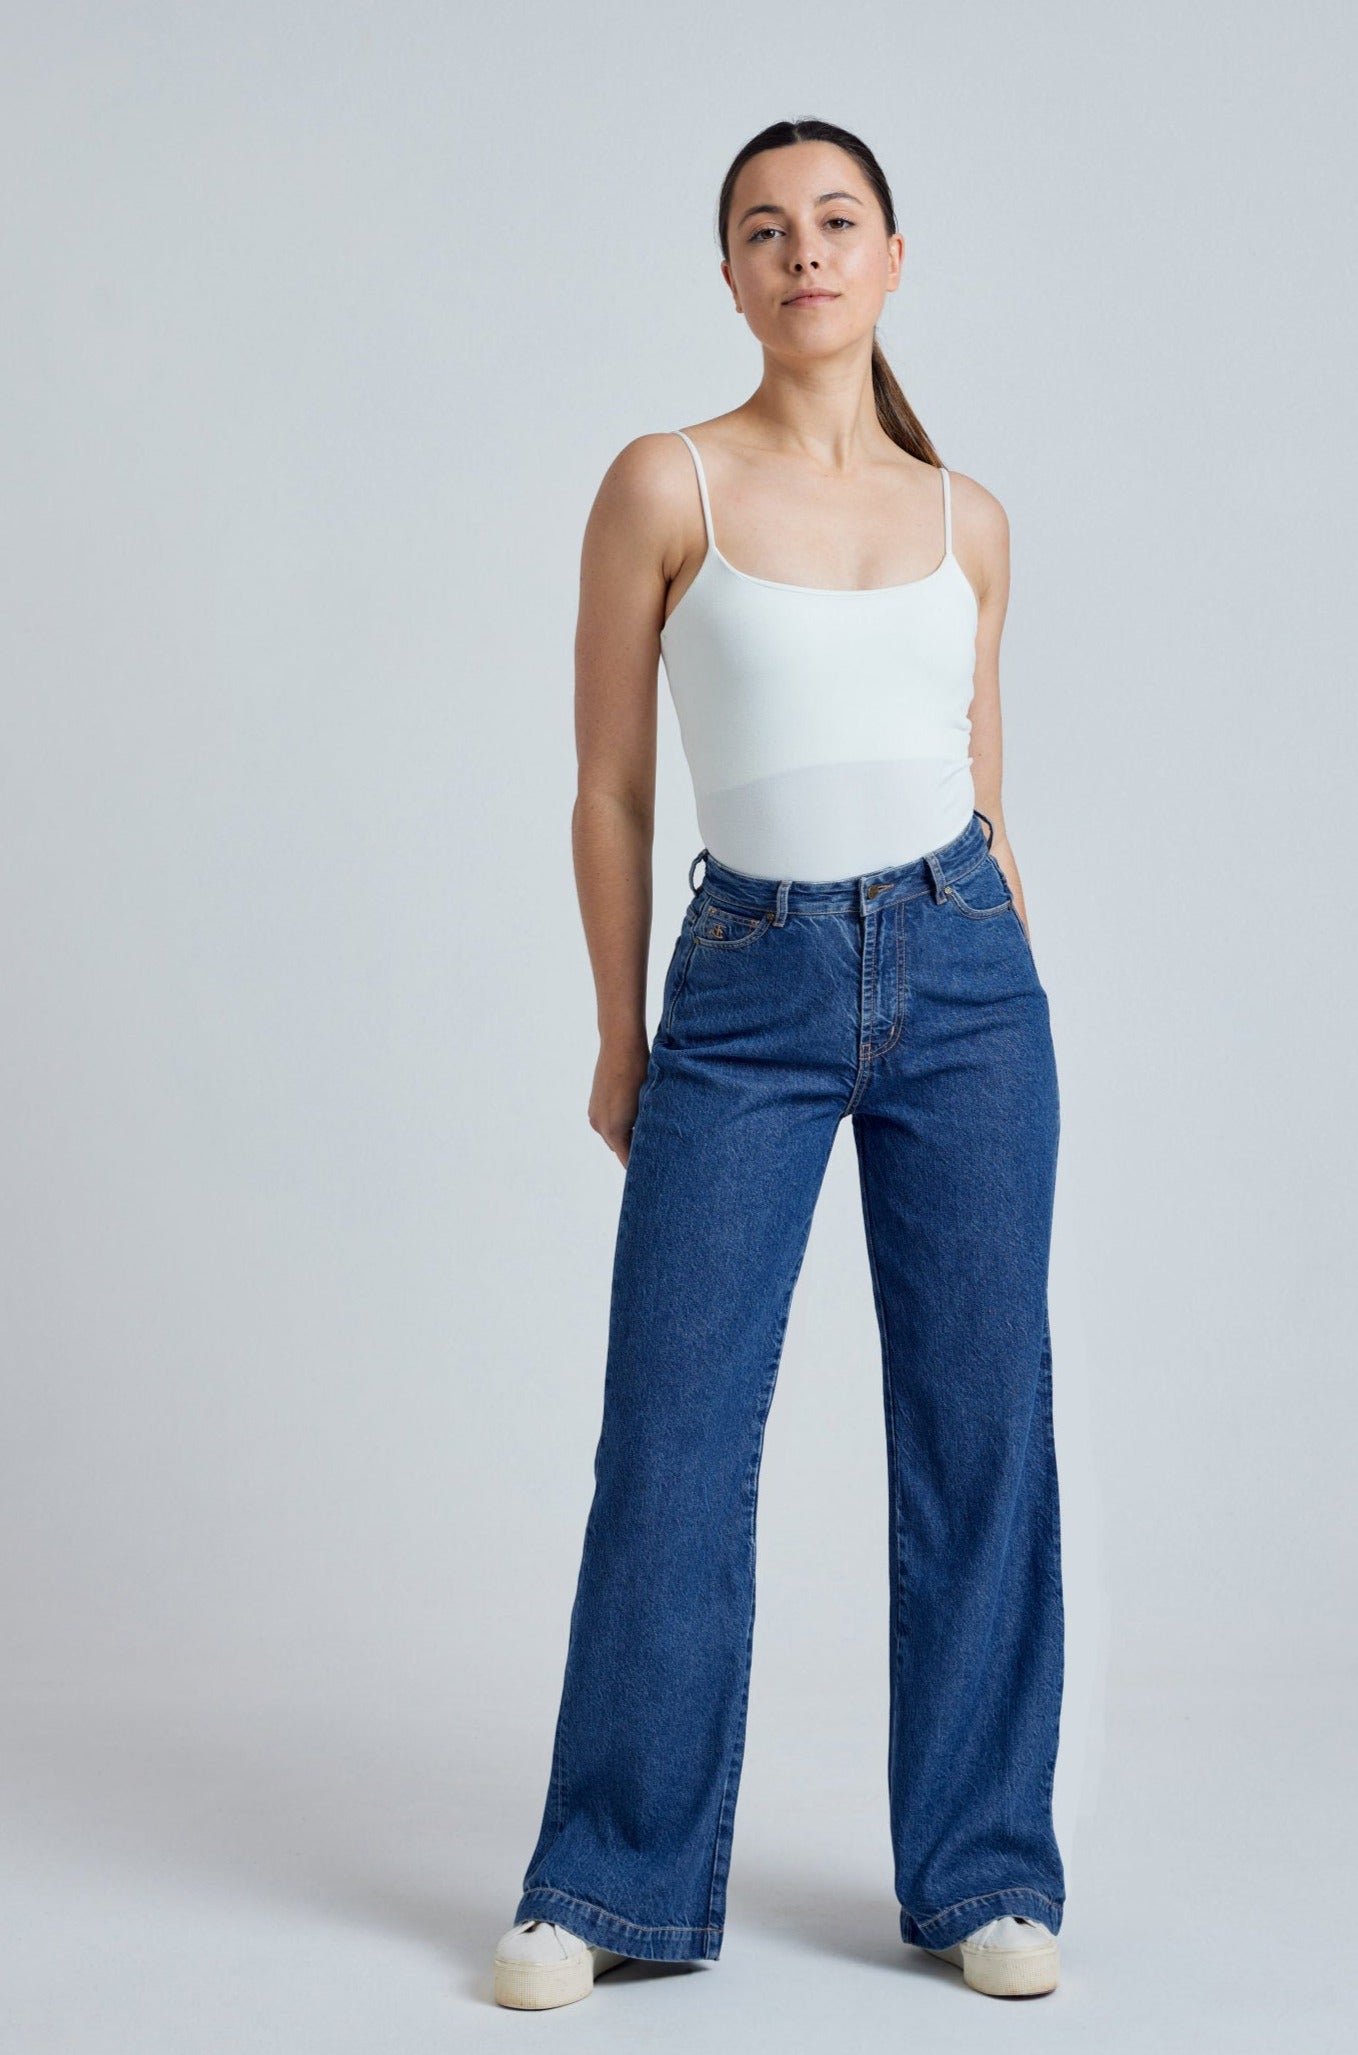 ETTA High Waist - GOTS Organic Cotton Jeans by Flax & Loom, 24" / Regular